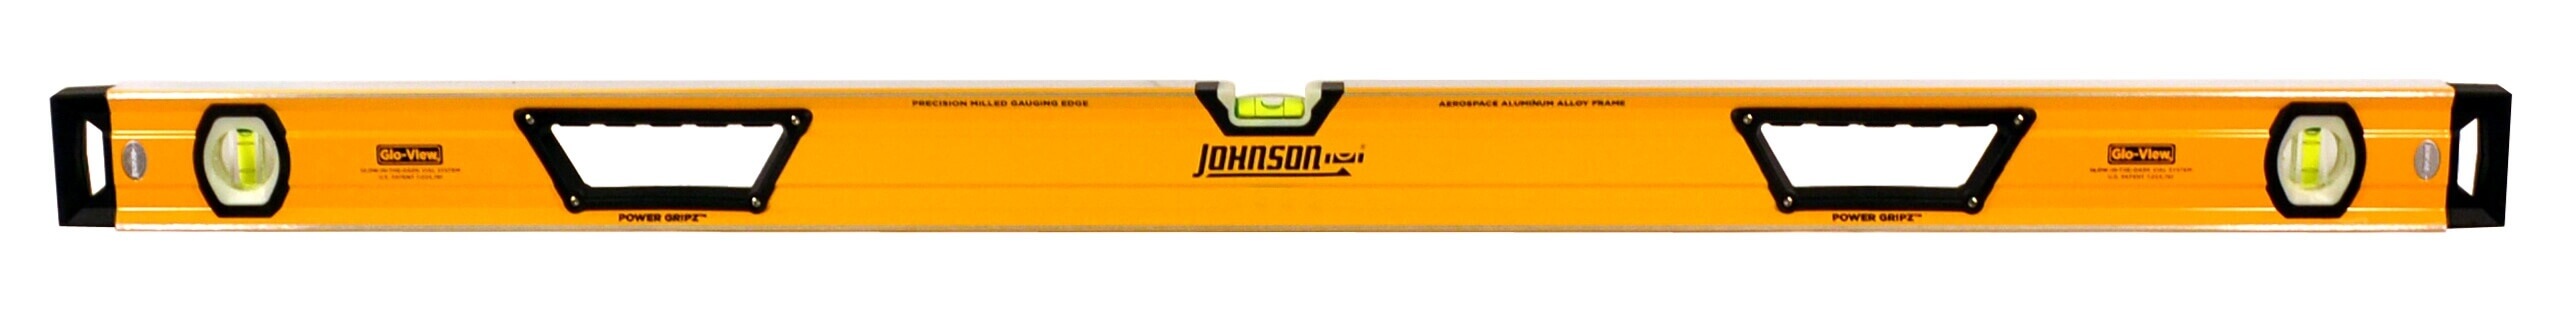 Johnson Level 48 Glo-View Heavy Duty Aluminum Box Level 1717-4800